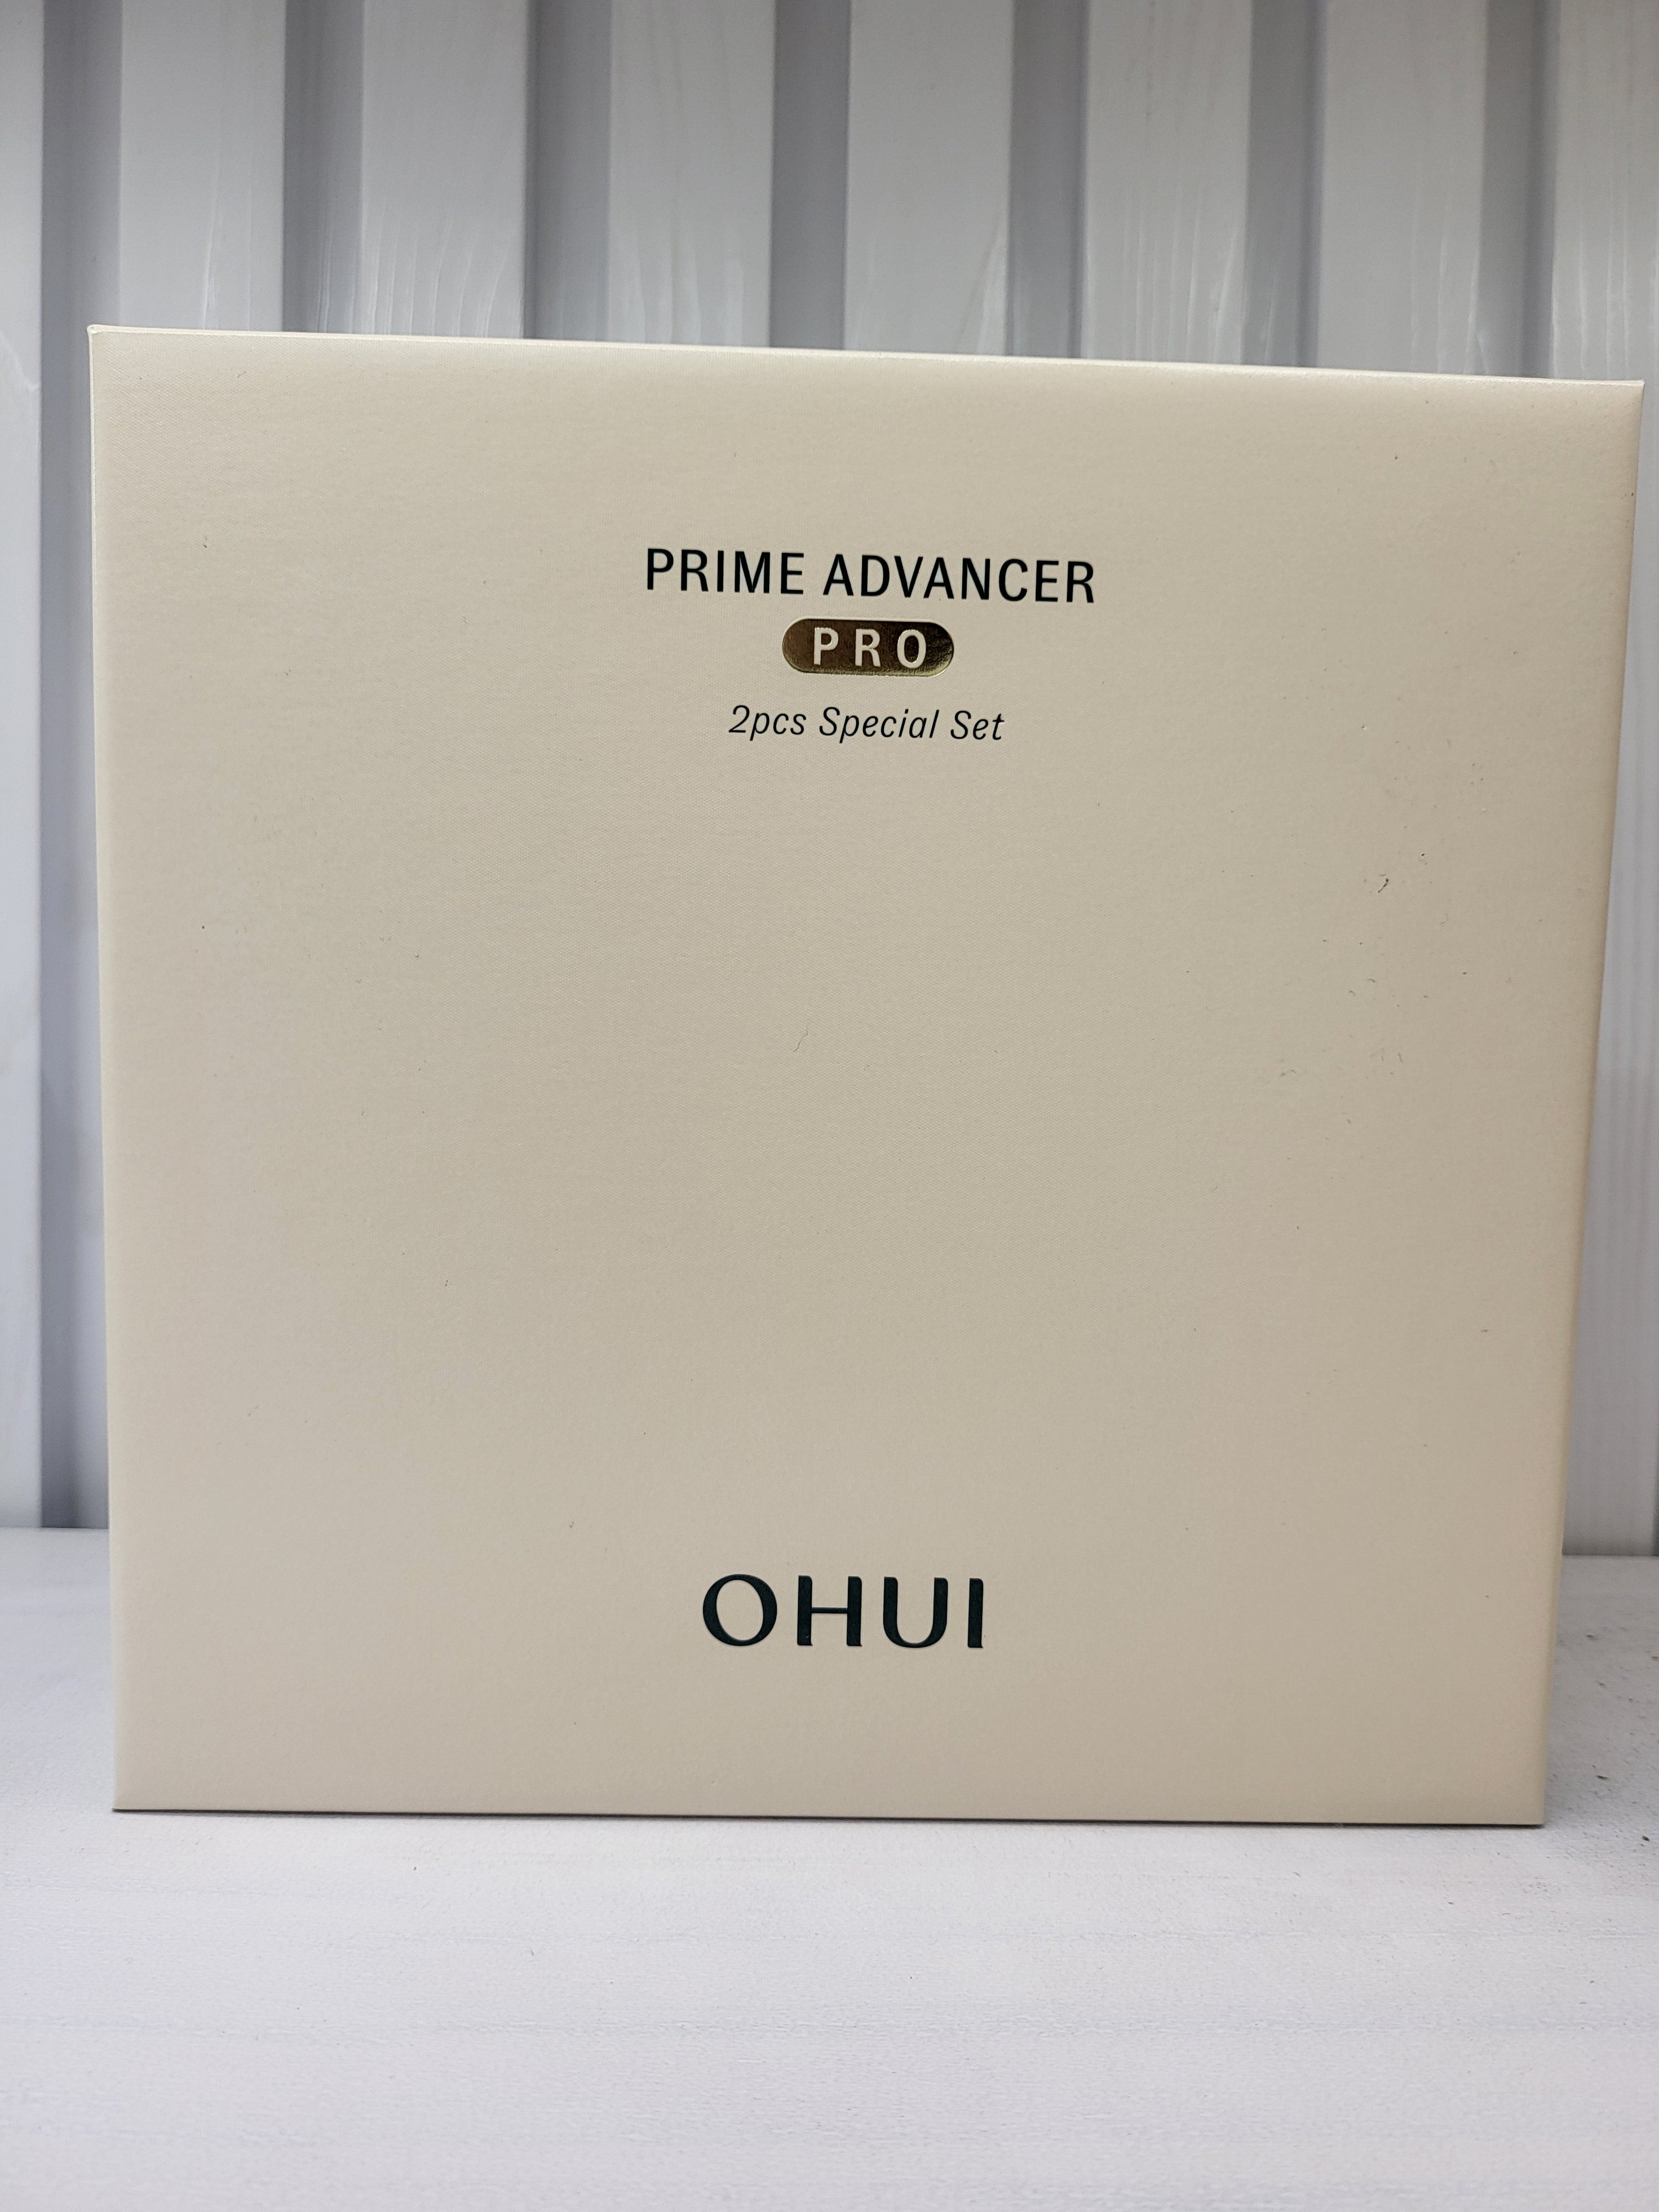 OHUI Prime Advancer Pro 2pcs Special Set